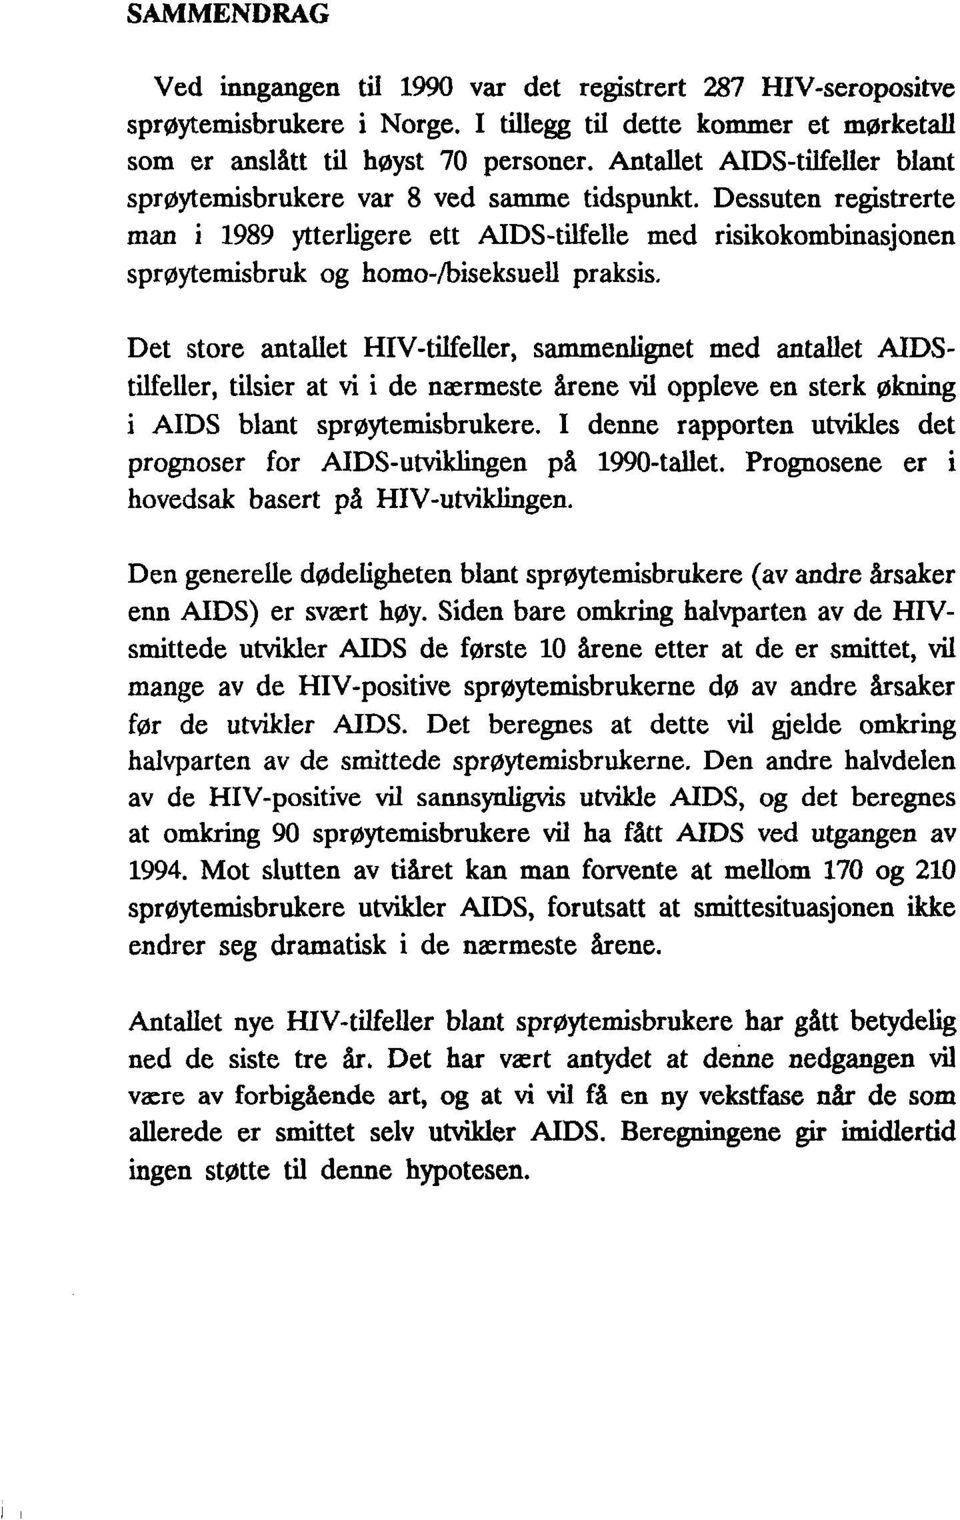 Dessuten registrerte man i 1989 ytterligere ett AIDS-tilfelle med risikokombinasjonen sprøytemisbruk og homo-/biseksuell praksis.